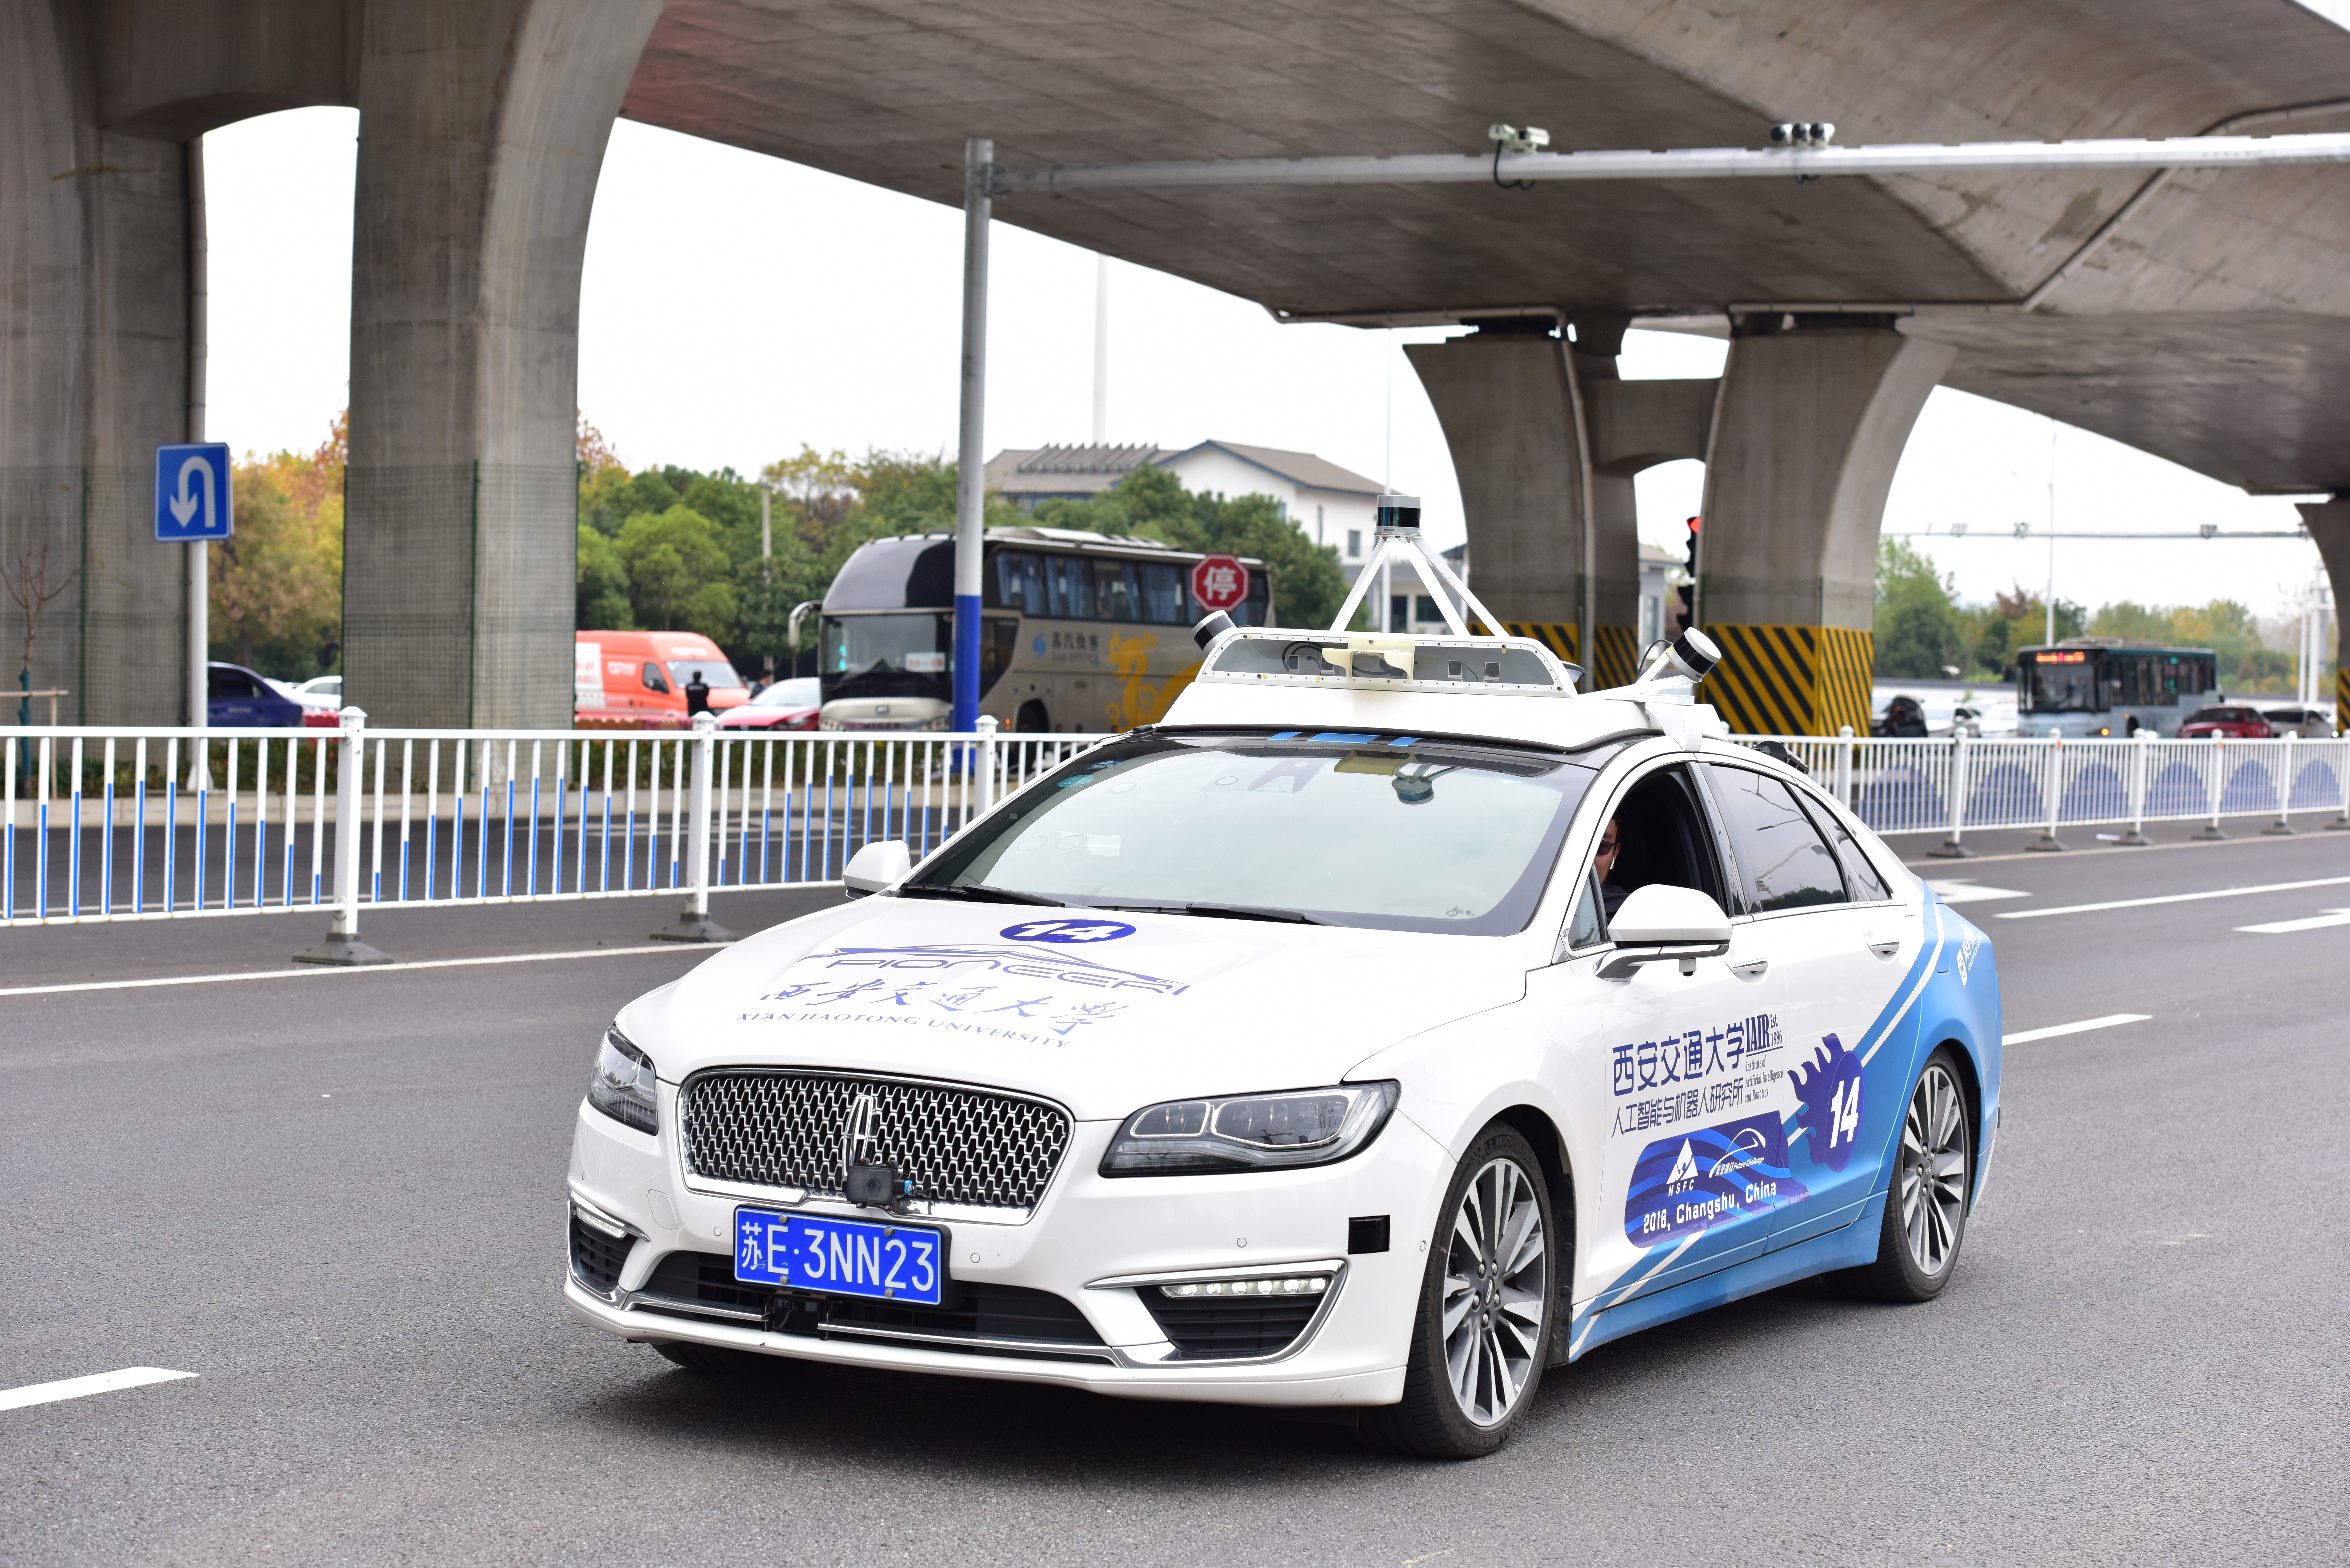 ベロダイン ライダーが中国の自律走行車コンテストのスポンサーとなり自動走行車の研究開発を支援 Business Wire